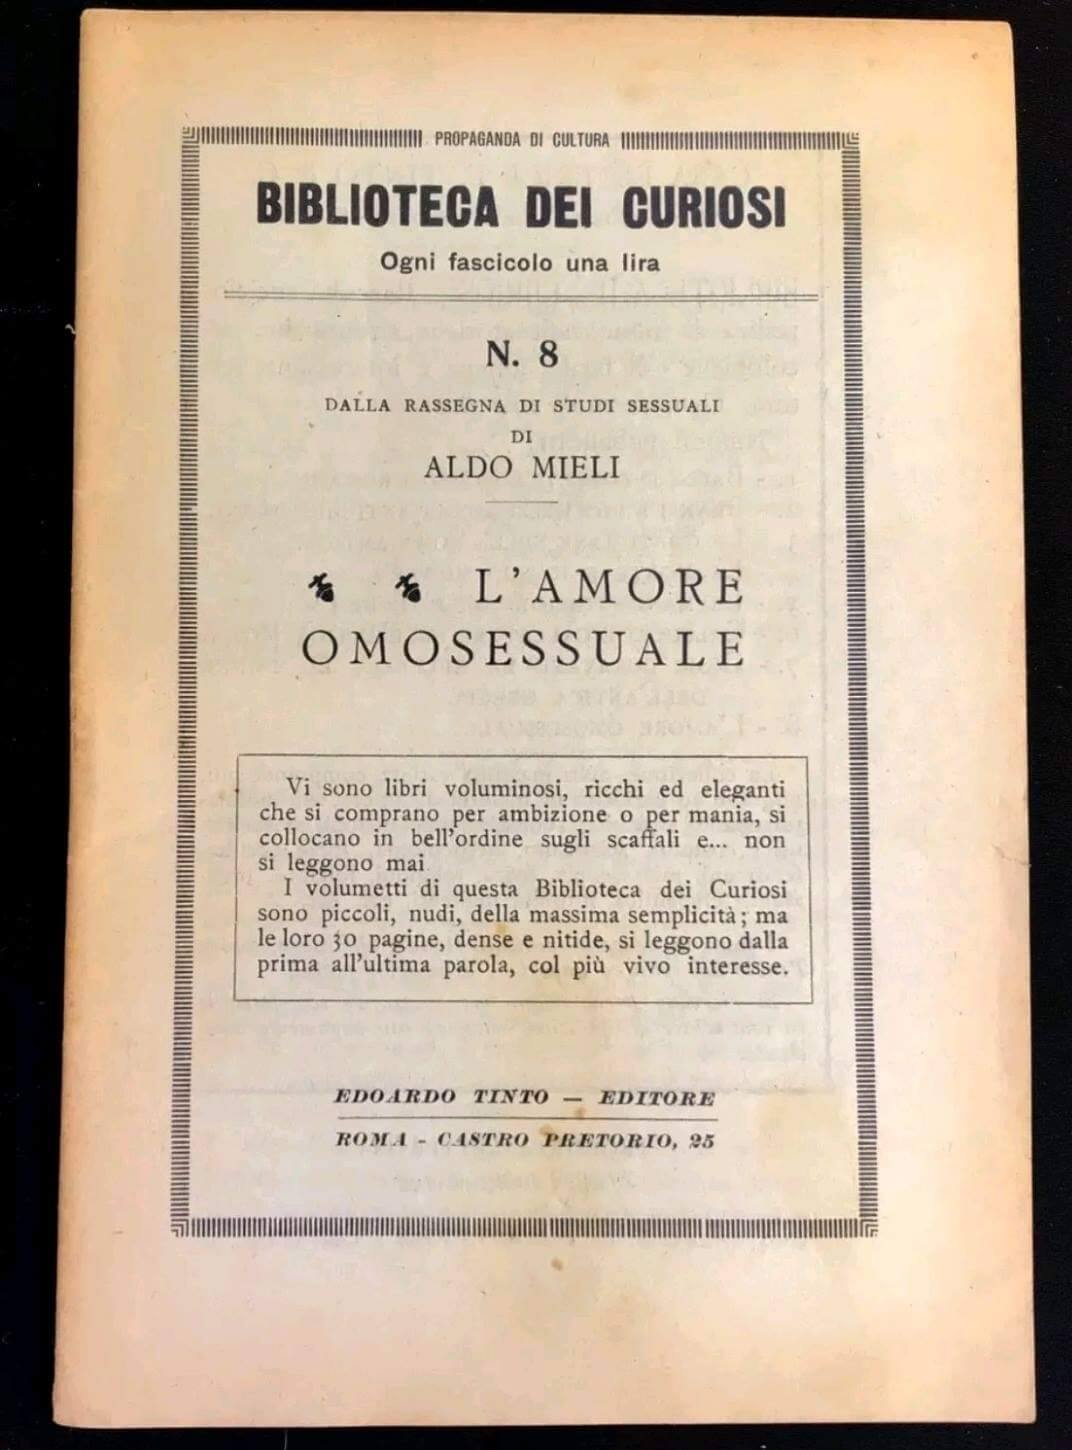 L’Amore Omosessuale pubblicato nella Biblioteca dei curiosi nel 1926.